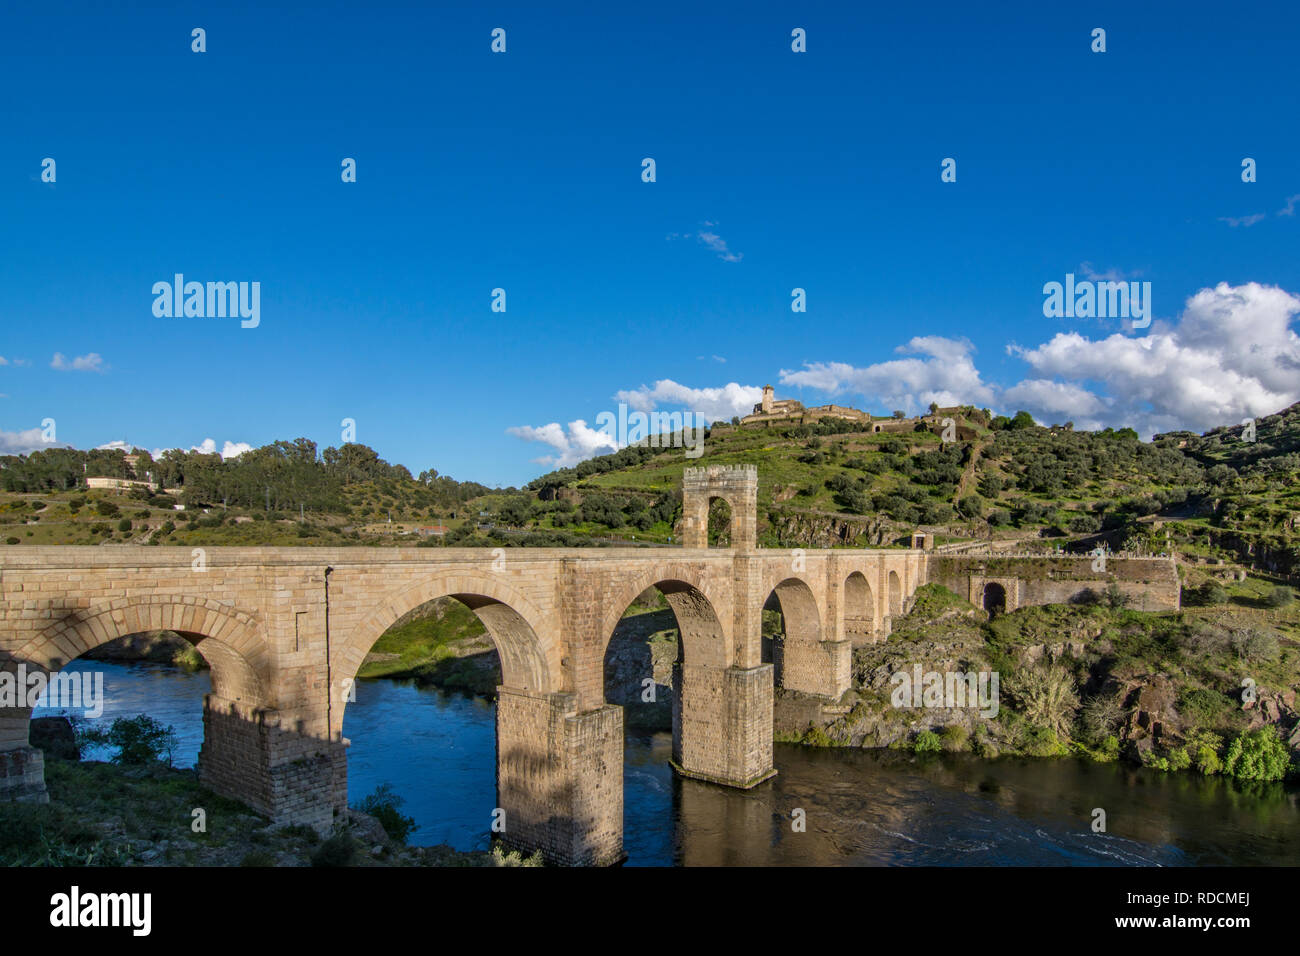 Der Stein Alacantara Bridge ist eine zweitausend Jahre alte römische Brücke, die den Fluss Tagus Fluss überquert. Stockfoto